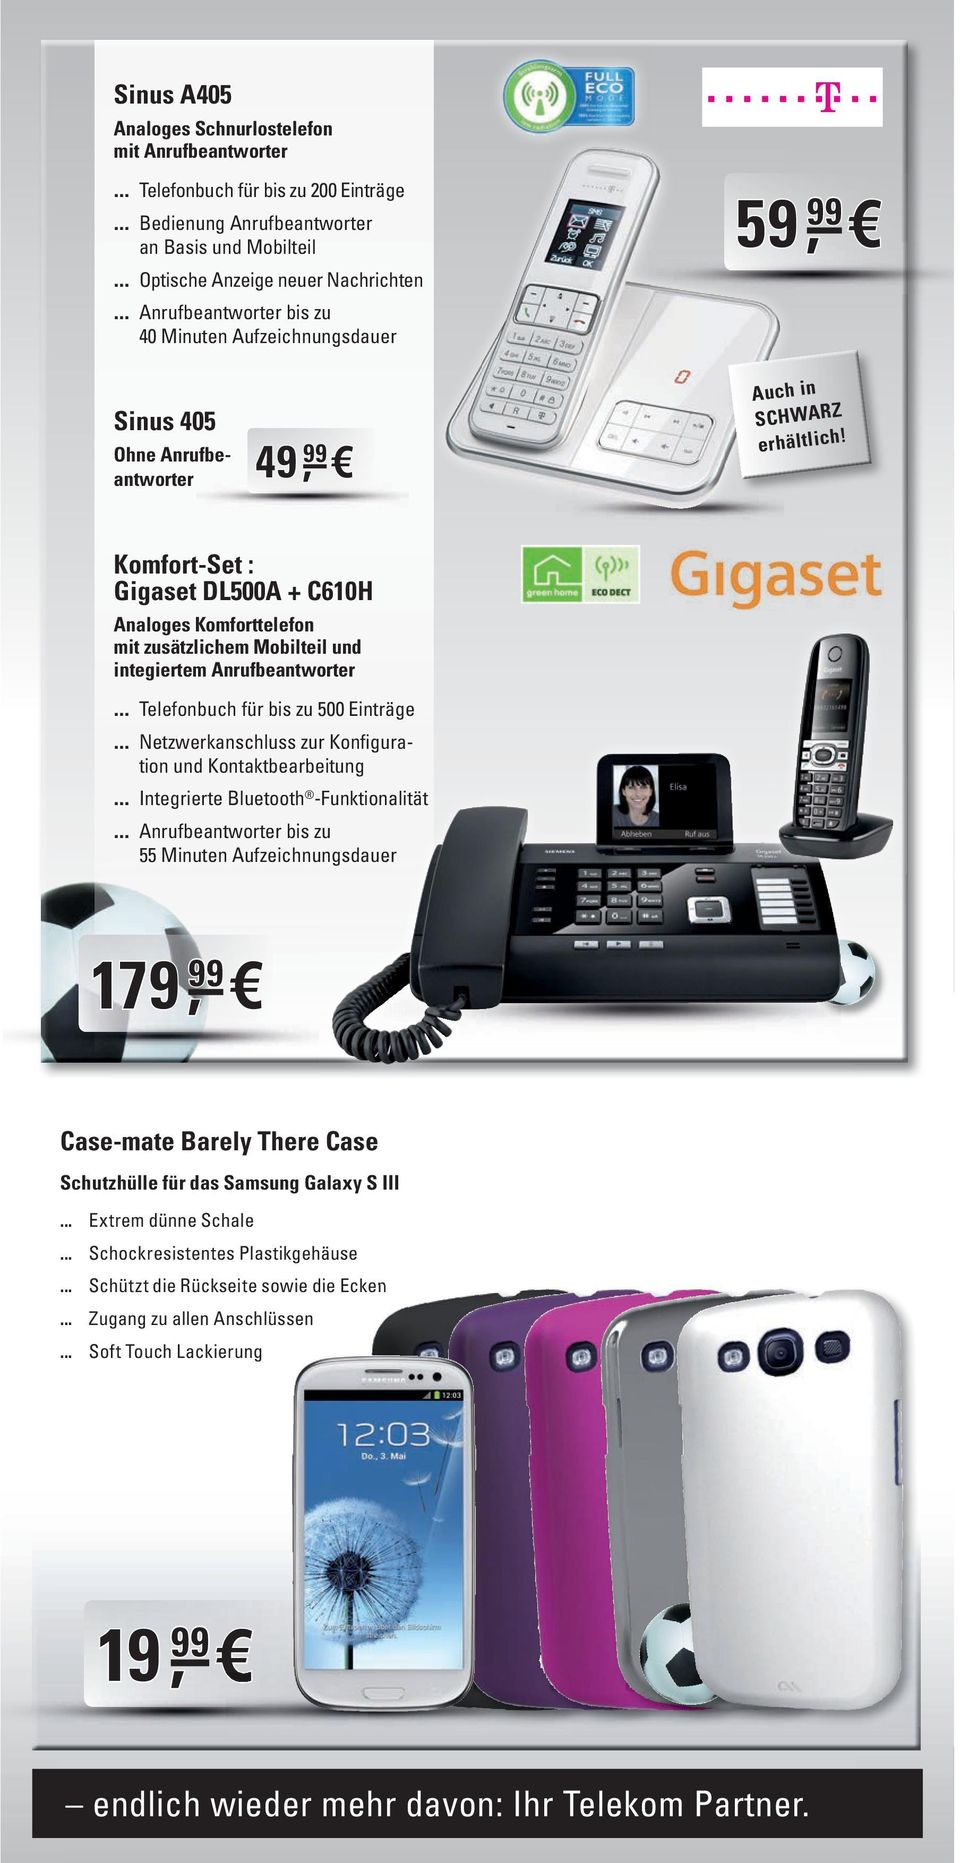 Komfort-Set : Gigaset DL500A + C610H Analoges Komforttelefon mit zusätzlichem Mobilteil und integiertem Anrufbeantworter Telefonbuch für bis zu 500 Einträge Netzwerkanschluss zur Konfiguration und